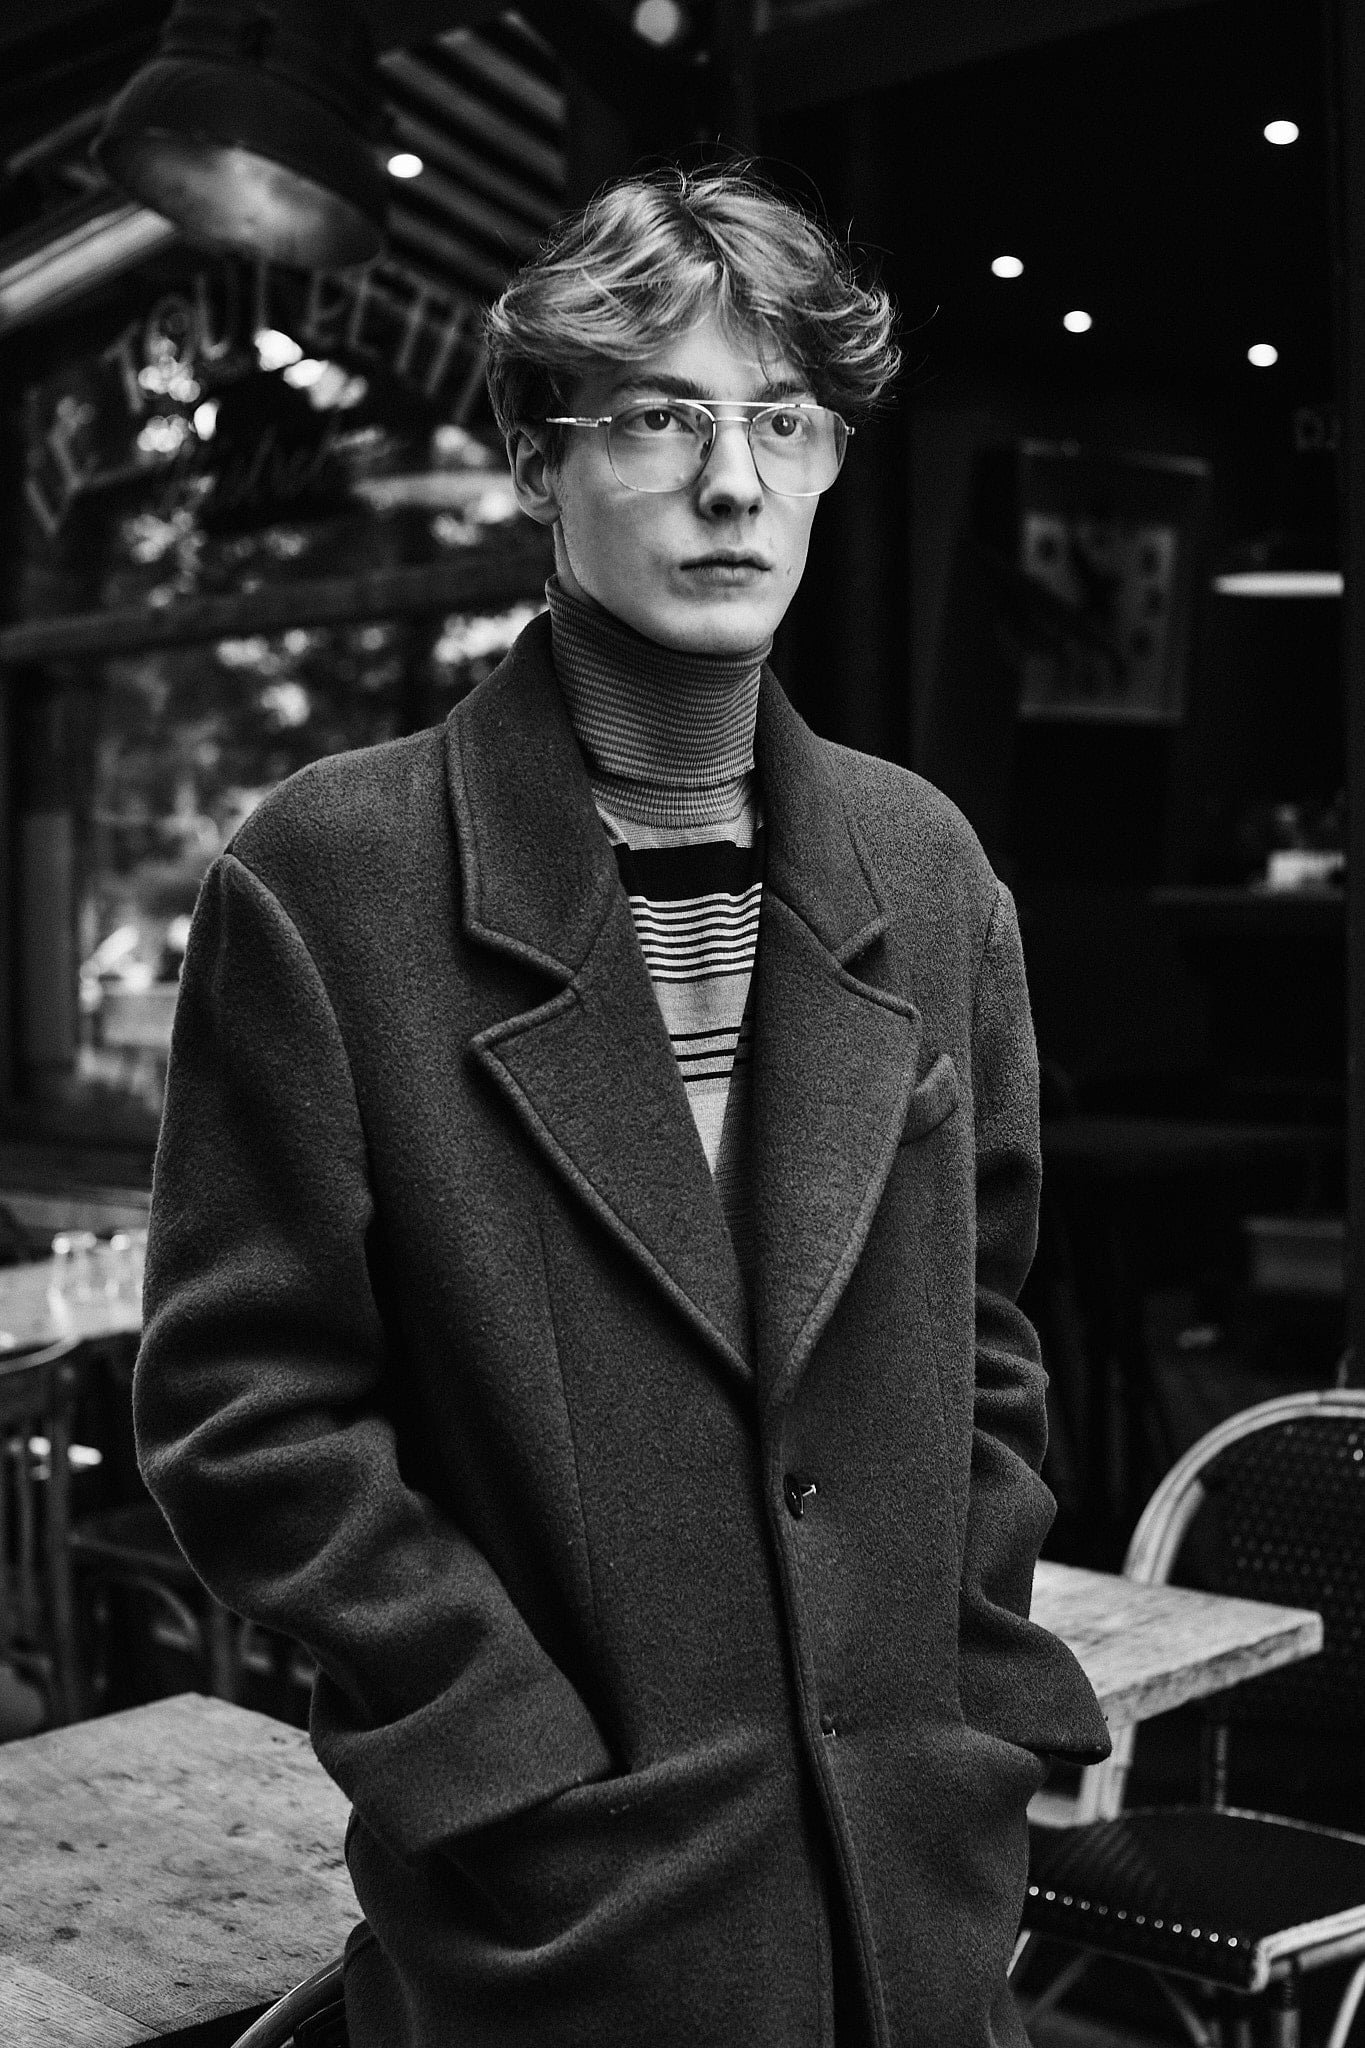 CHARLES DE VILMORIN, directeur artistique de la maison Rochas, ici dans les rues de Paris devant la terrasse d'un café, photo en noir et blanc.